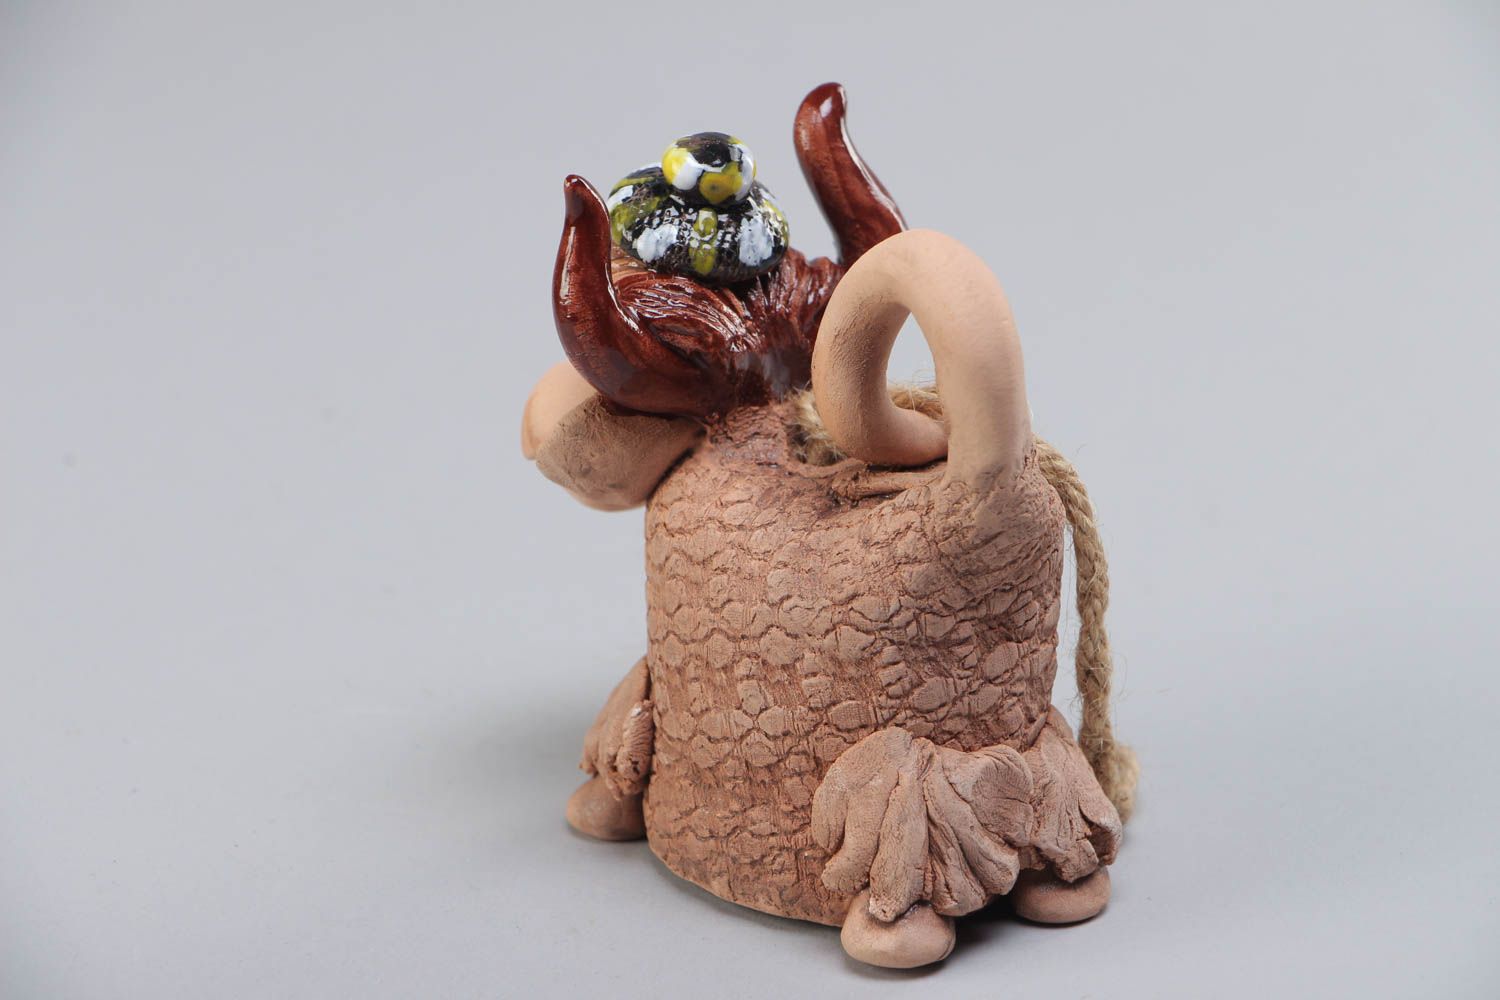 Handmade Deko Glöckchen aus Ton in Form der Kuh mit Acrylfarbe bemalt schön foto 3